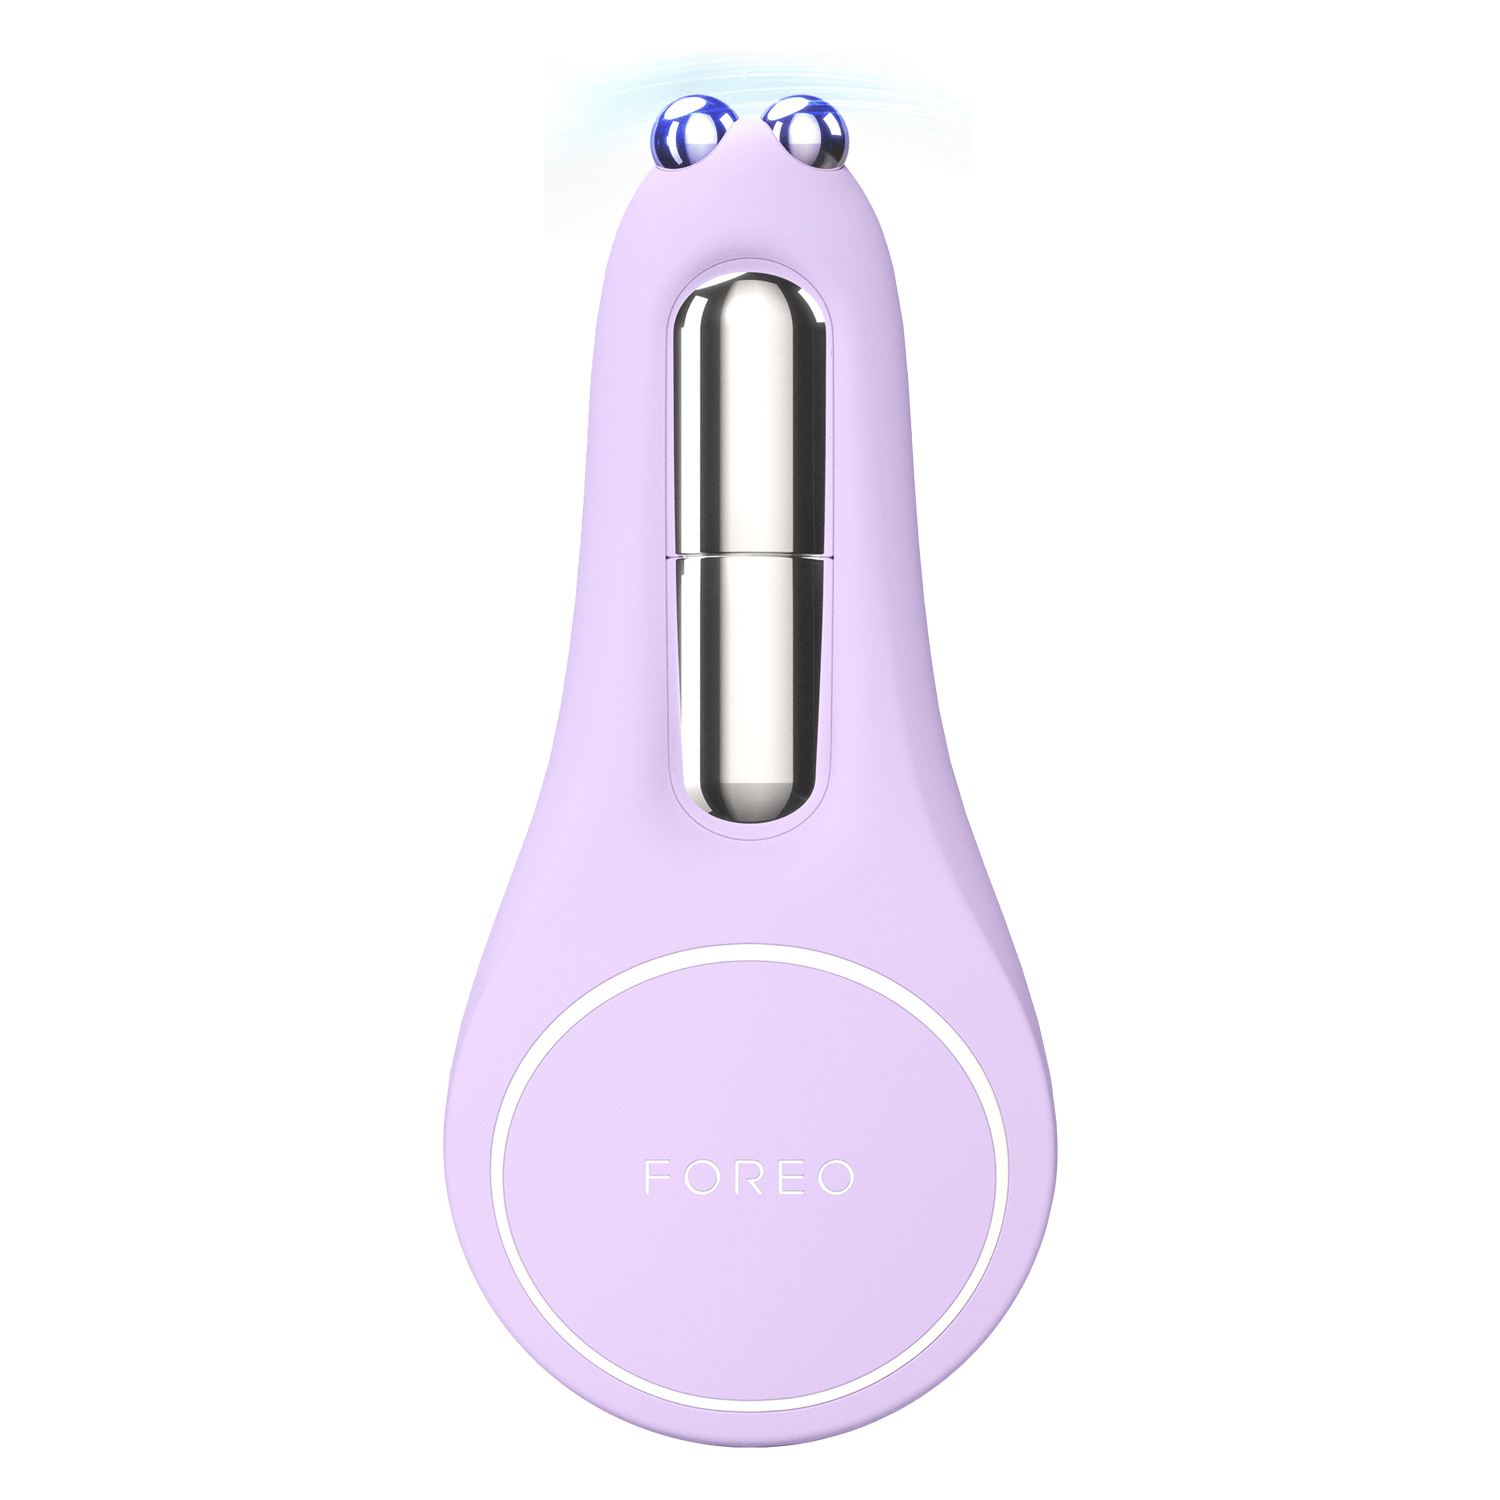 Produktbild von BEAR™ 2 eyes & lips - Straffung Mikrostromgerät Augen & Lippen Lavender